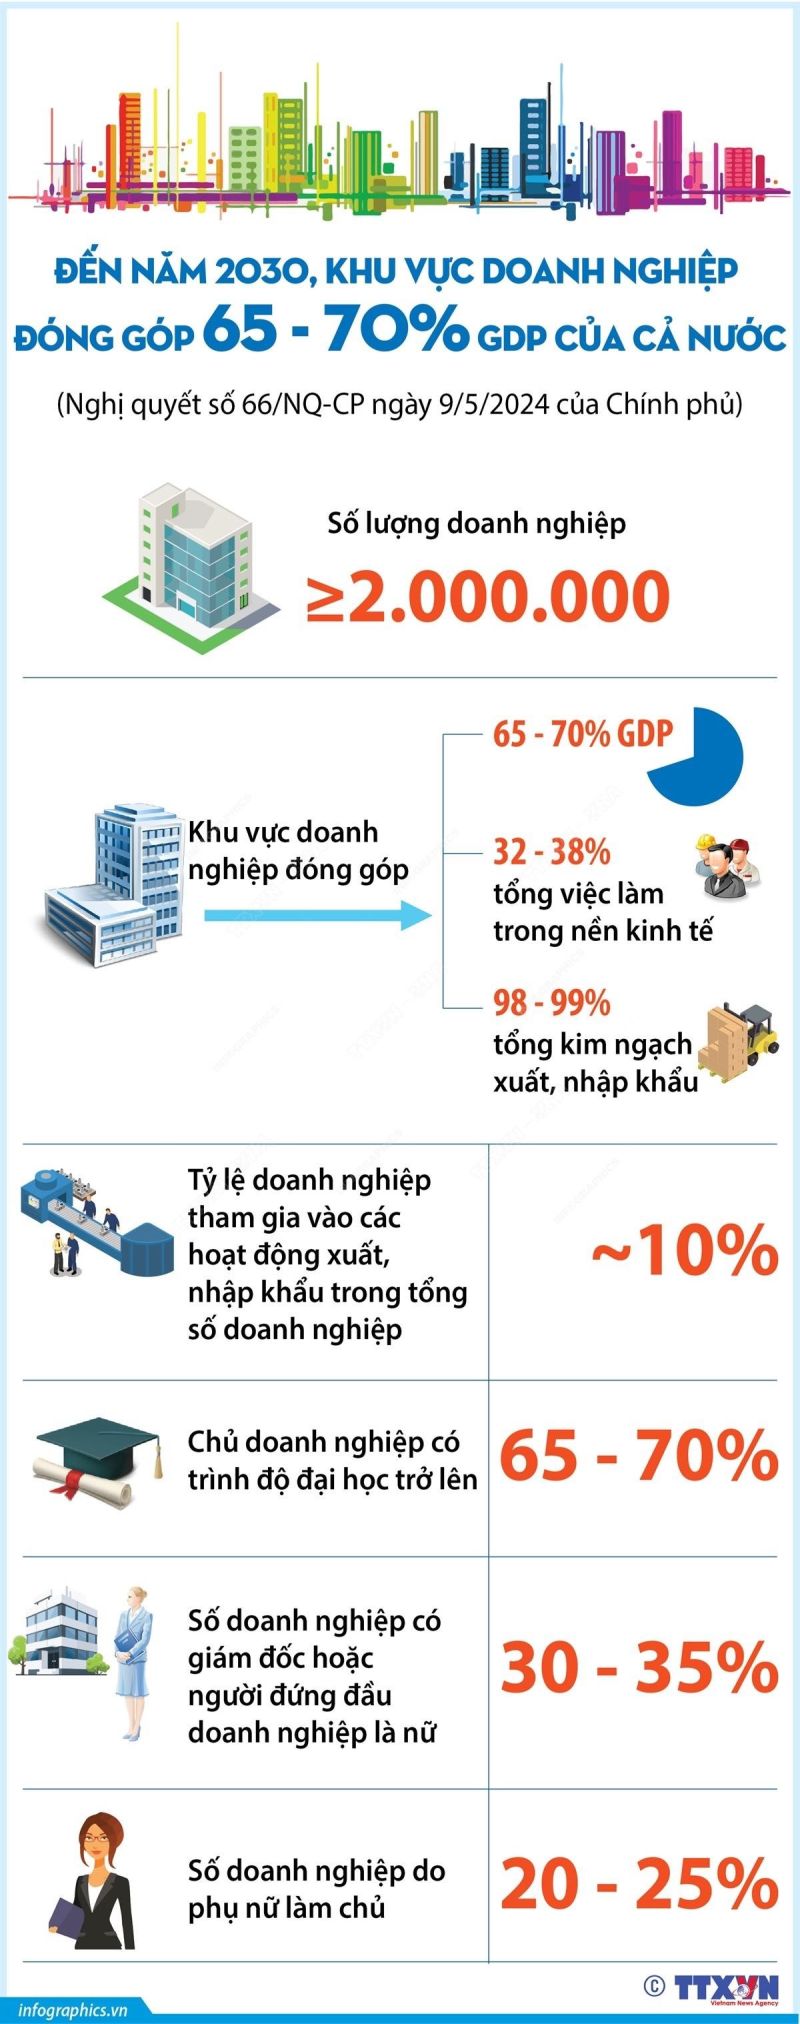 Đến năm 2030, Việt Nam có ít nhất 2 triệu doanh nghiệp, trong đó hình thành và phát triển nhiều doanh nhân lãnh đạo các tập đoàn kinh tế mạnh. (Nguồn: TTXVN)